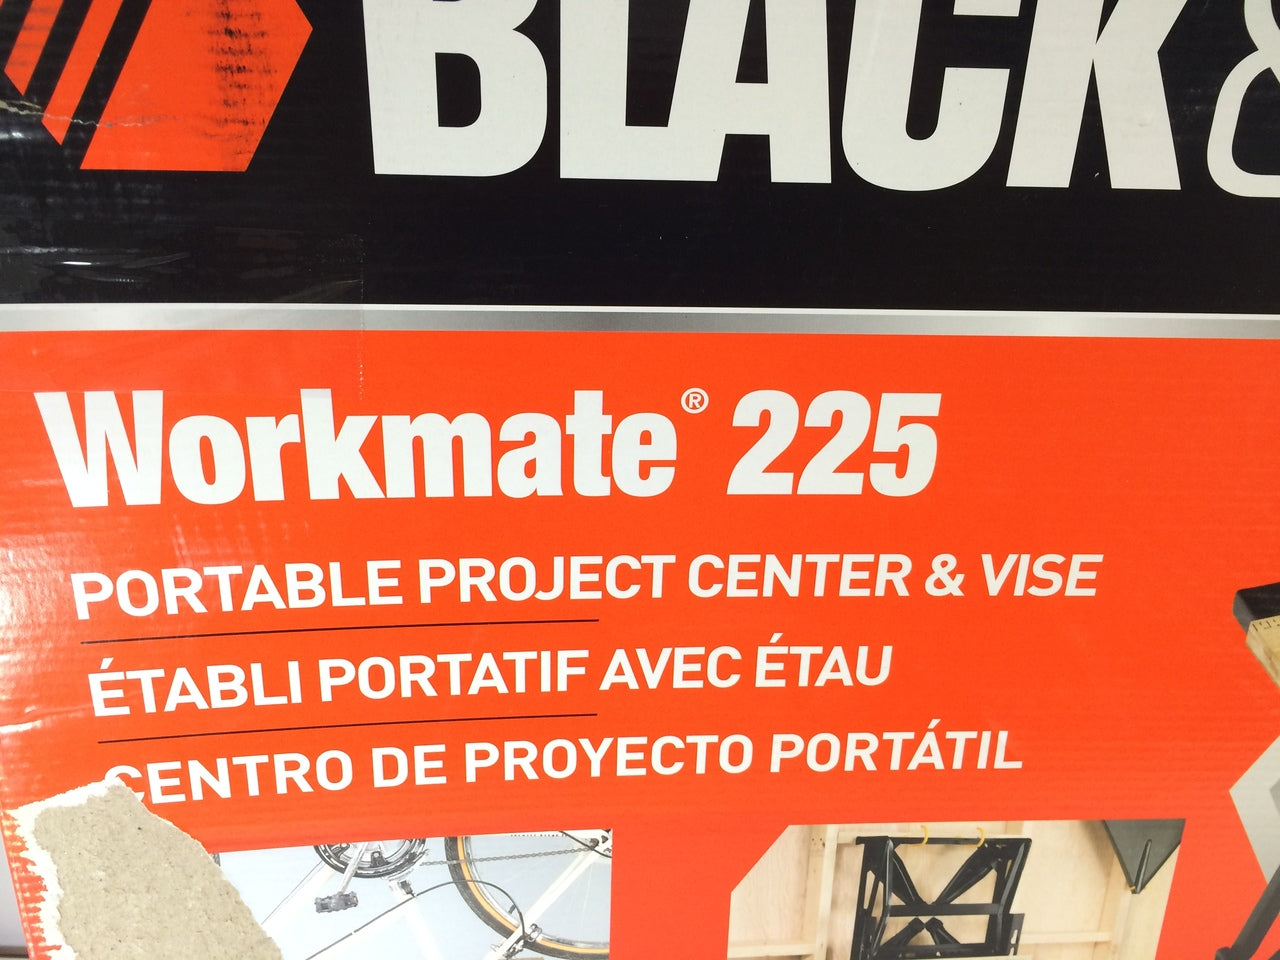 Black & Decker Wm225 Workmate Portable Project Center & Vise